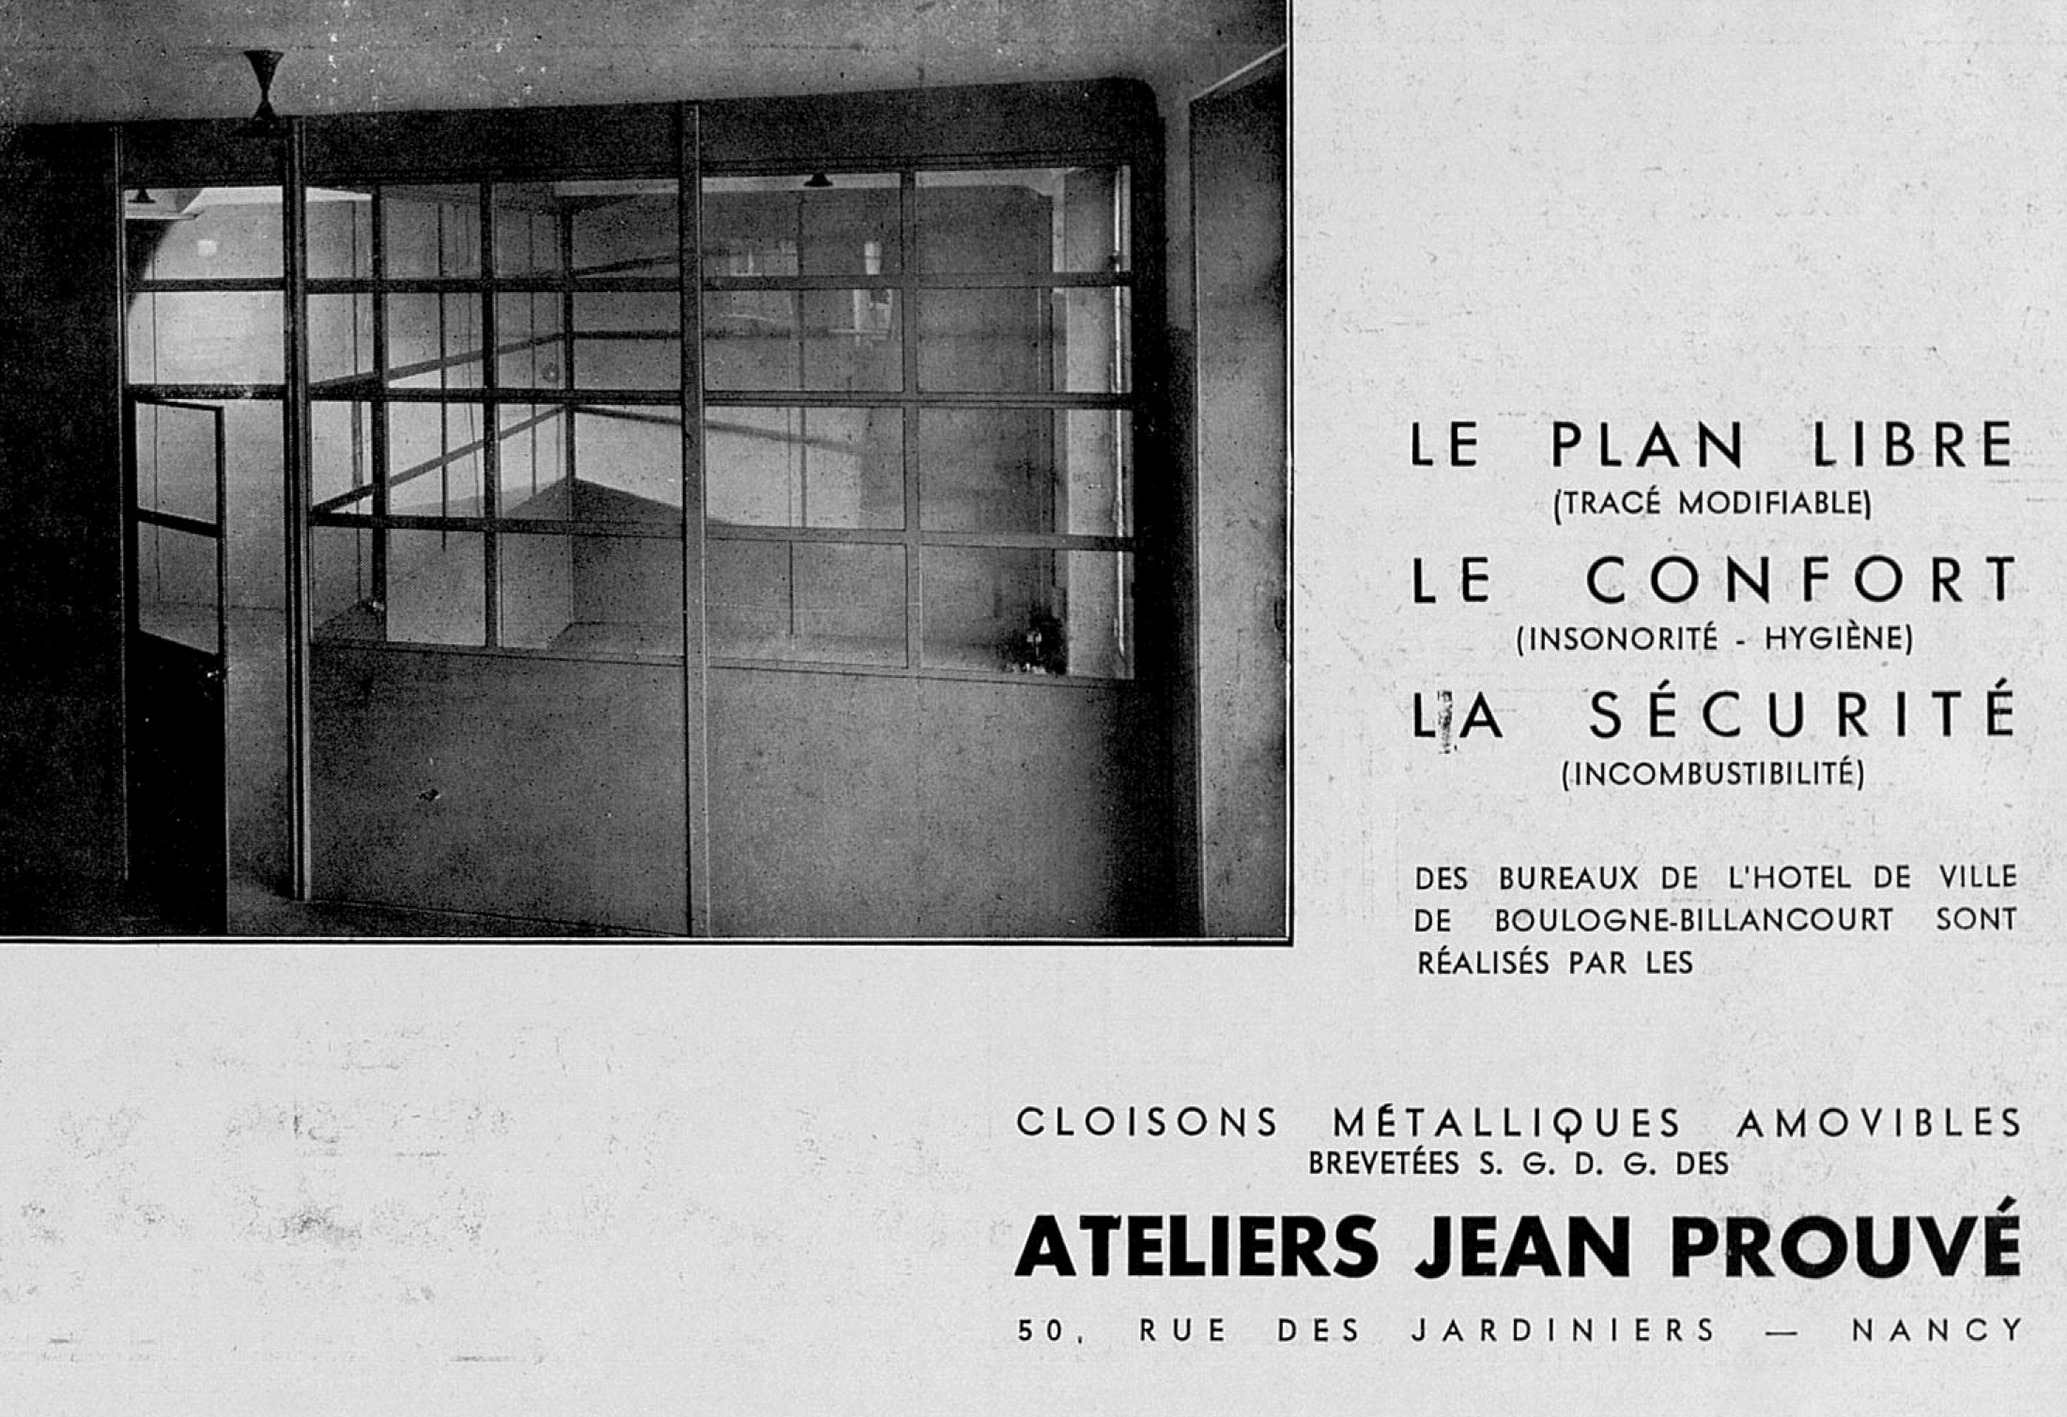 Publicité des Ateliers Jean Prouvé, <i>L’Architecture d’aujourd’hui,</i> n° 8, 1934.